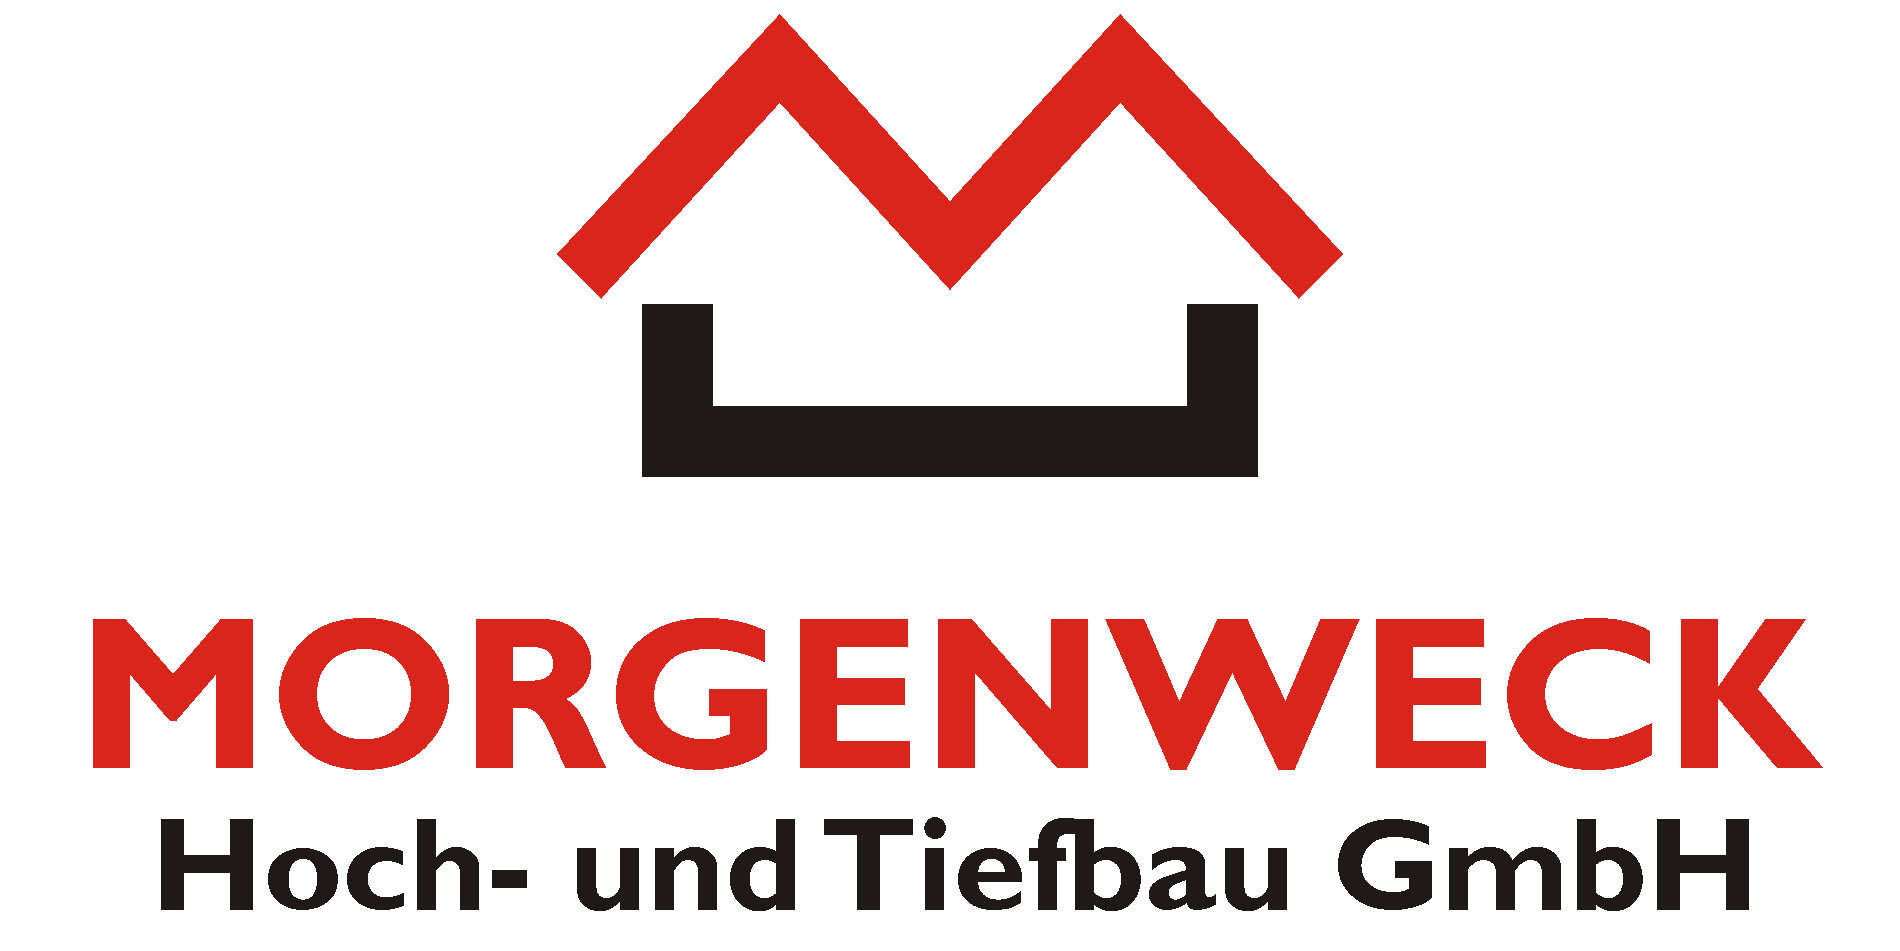 Morgenweck Hoch- und Tiefbau GmbH